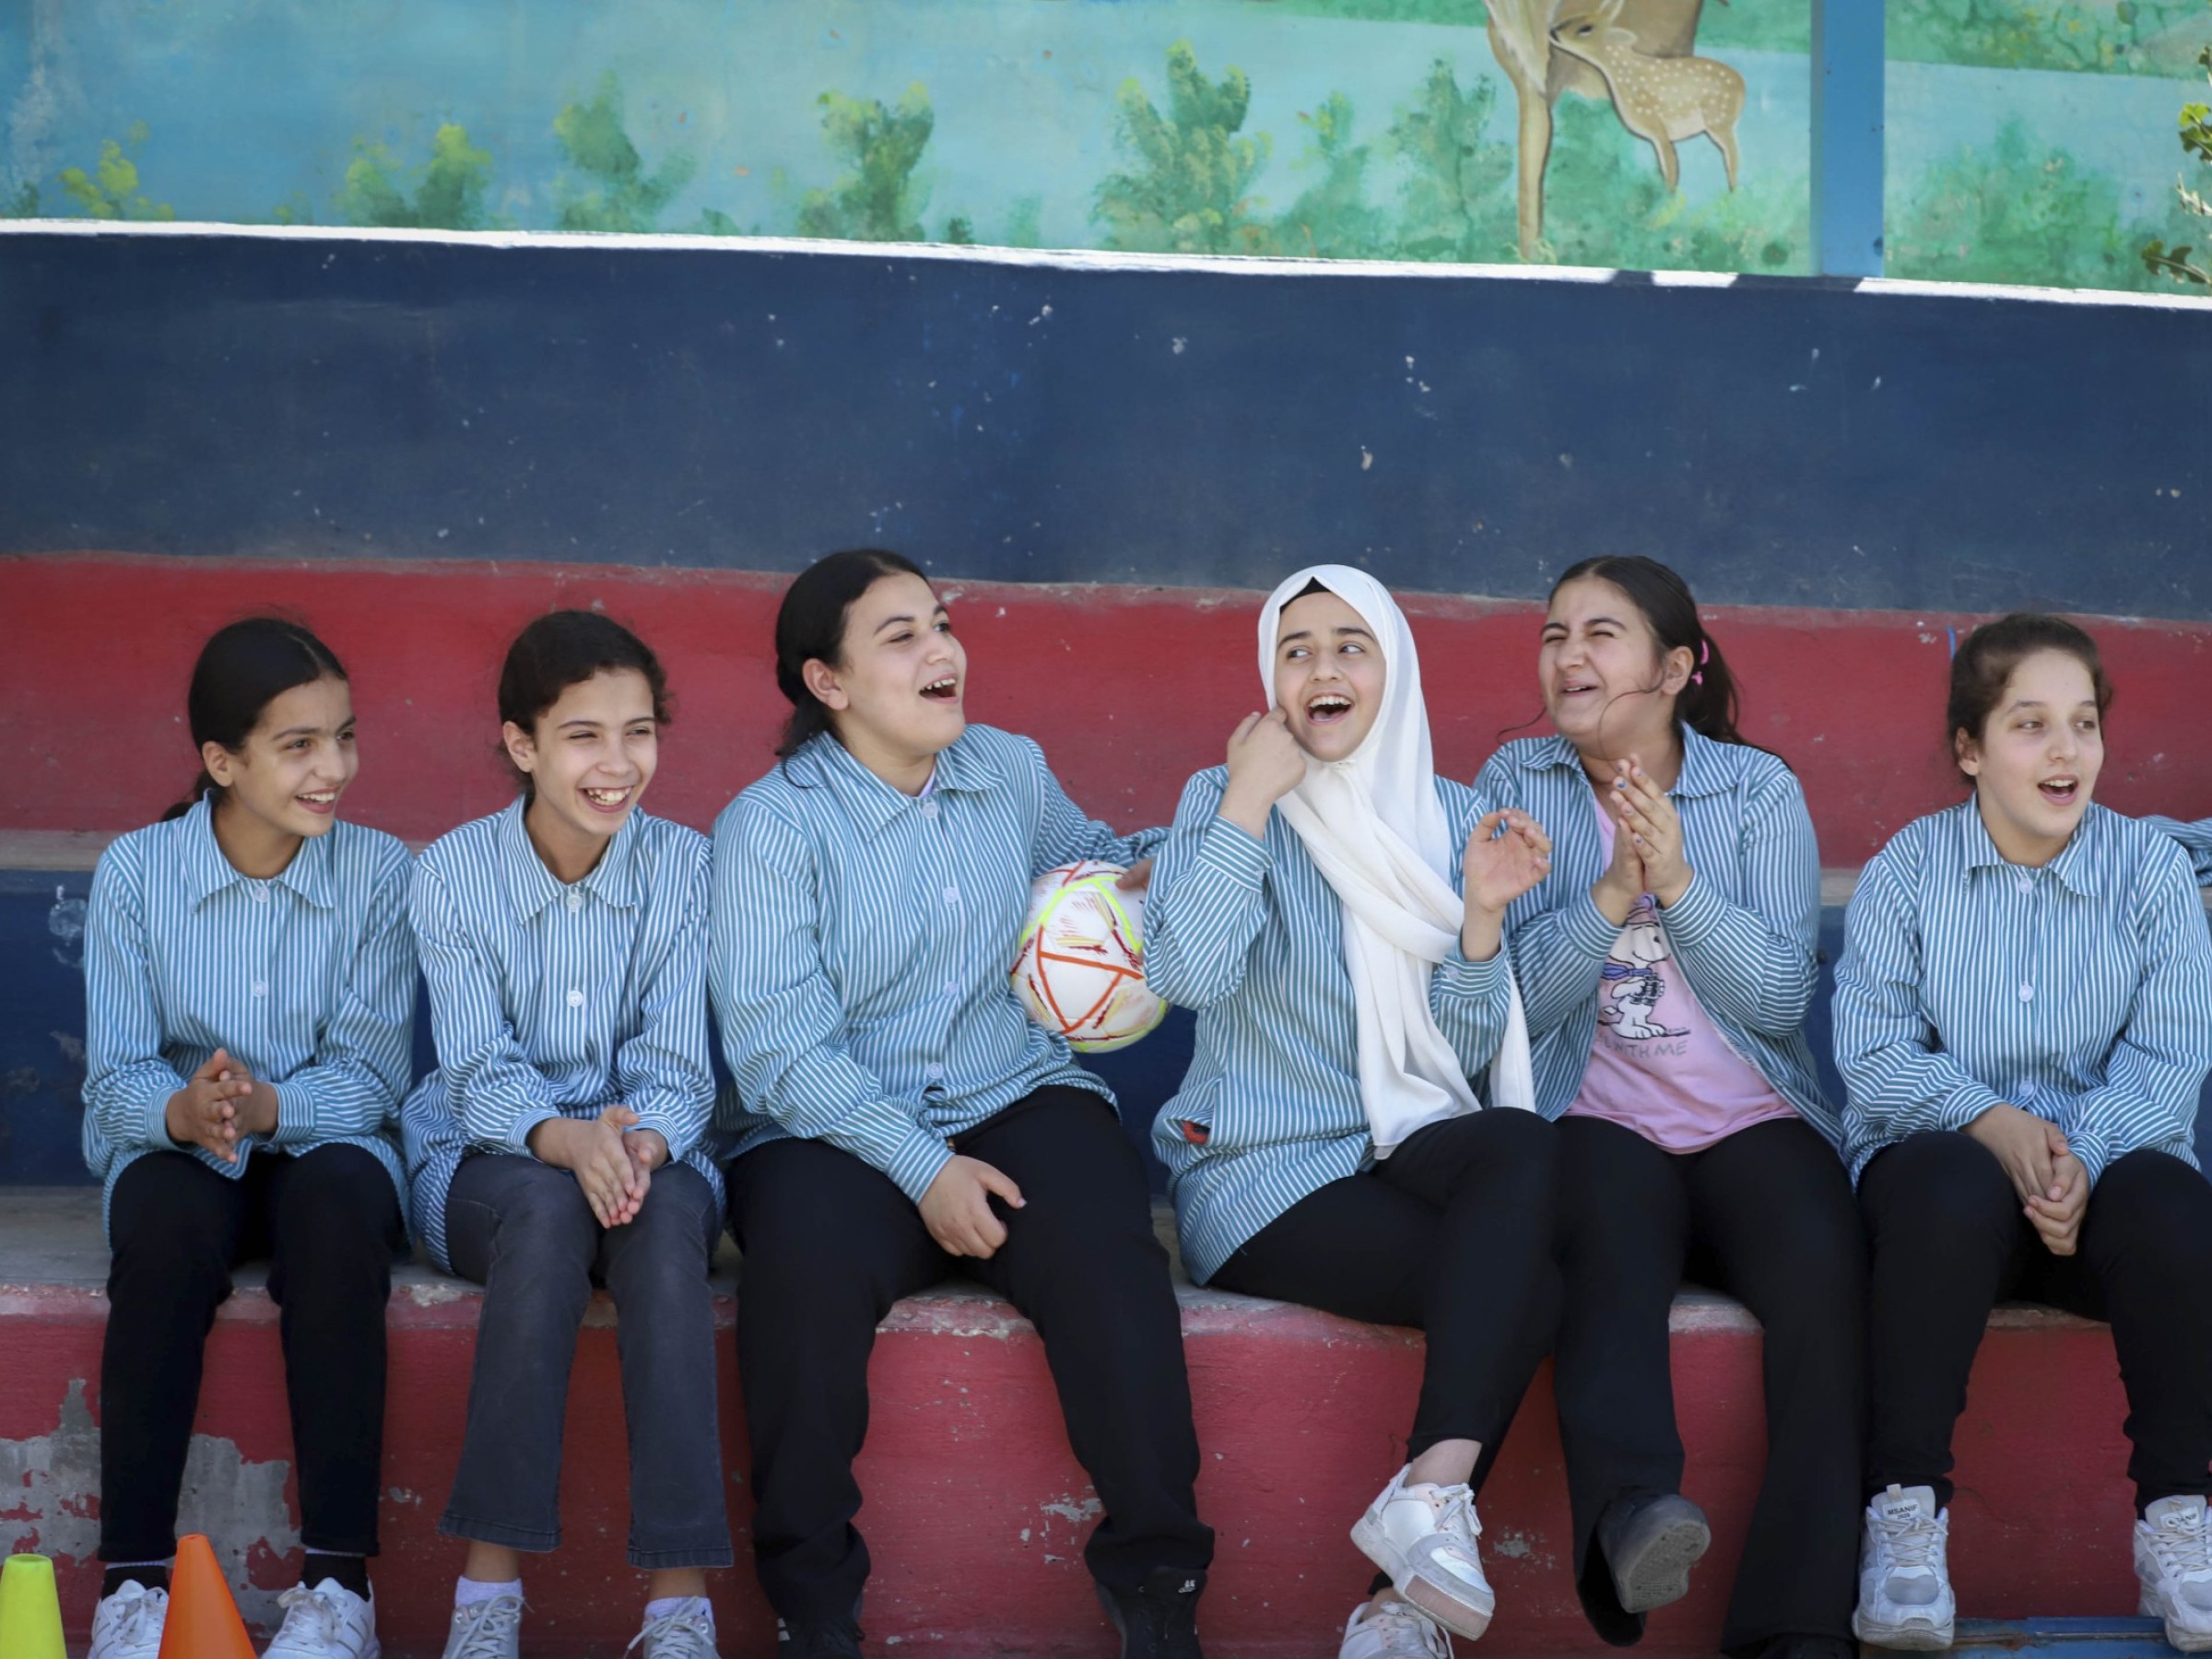 Mädchen aus Palästina sitzen auf der Wartebank beim Fussballspiel und lachen.